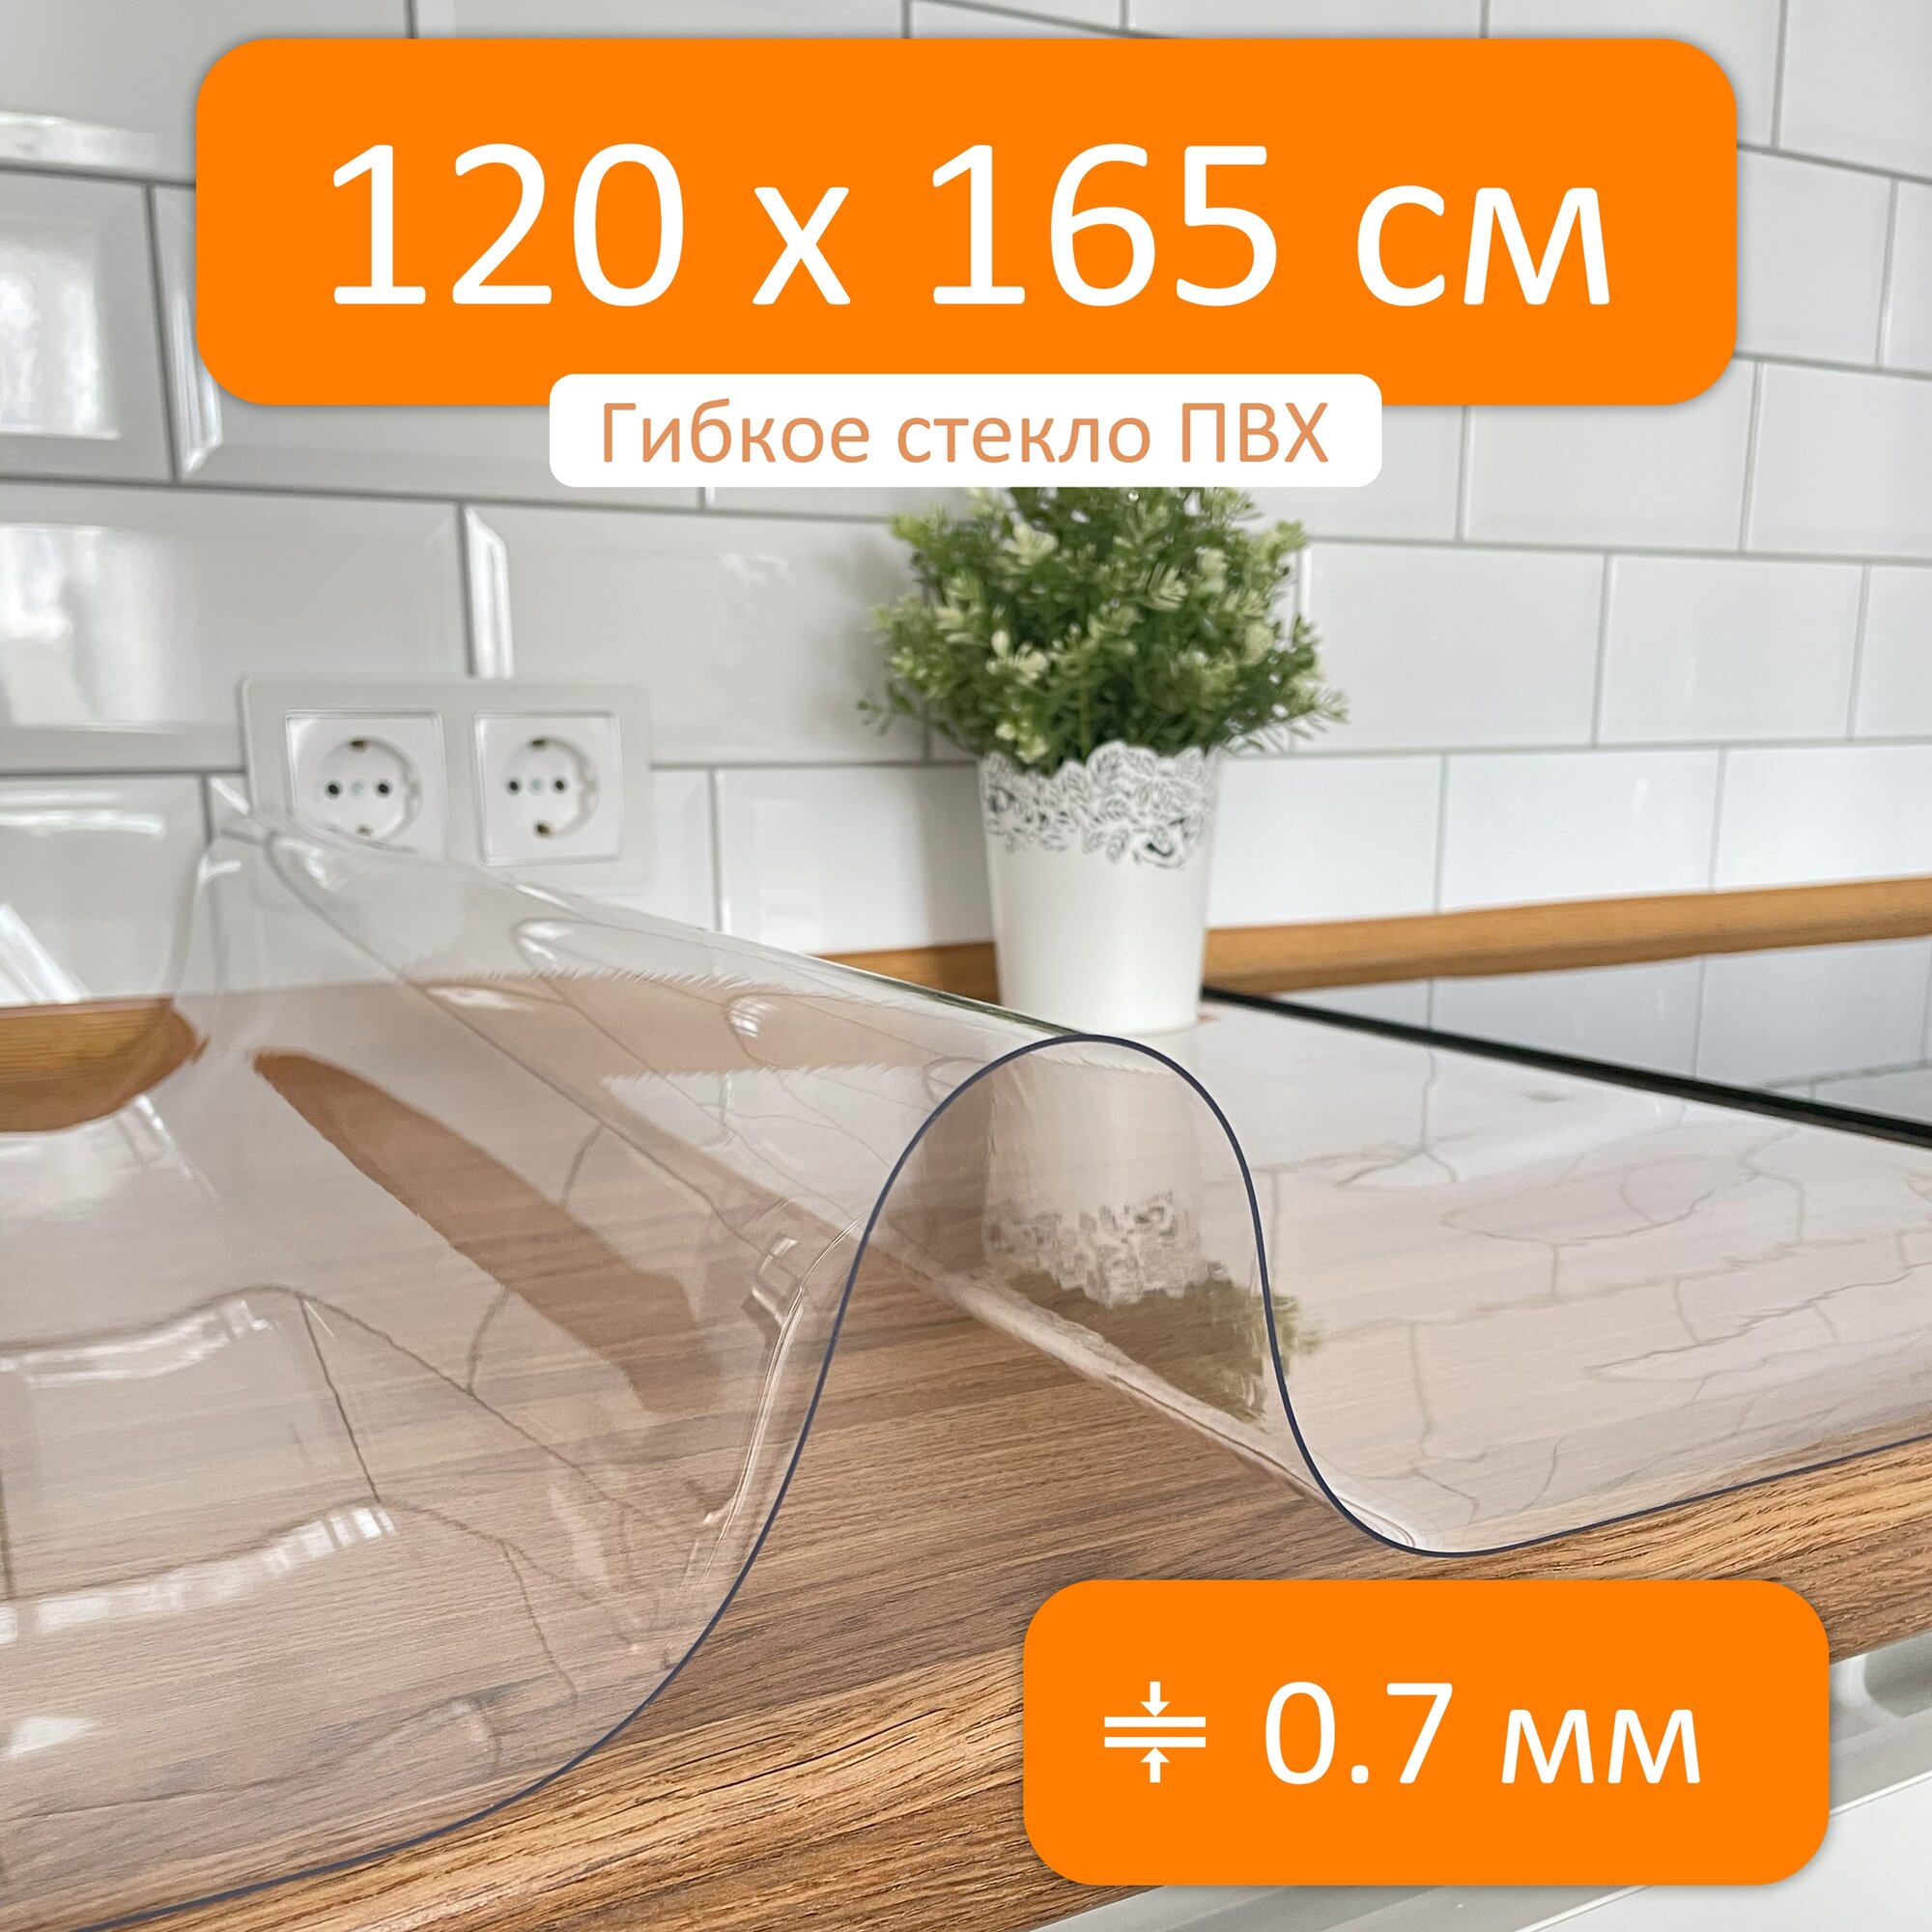 Гибкое стекло 120x165 см, толщина 0.7 мм, скатерть силиконовая